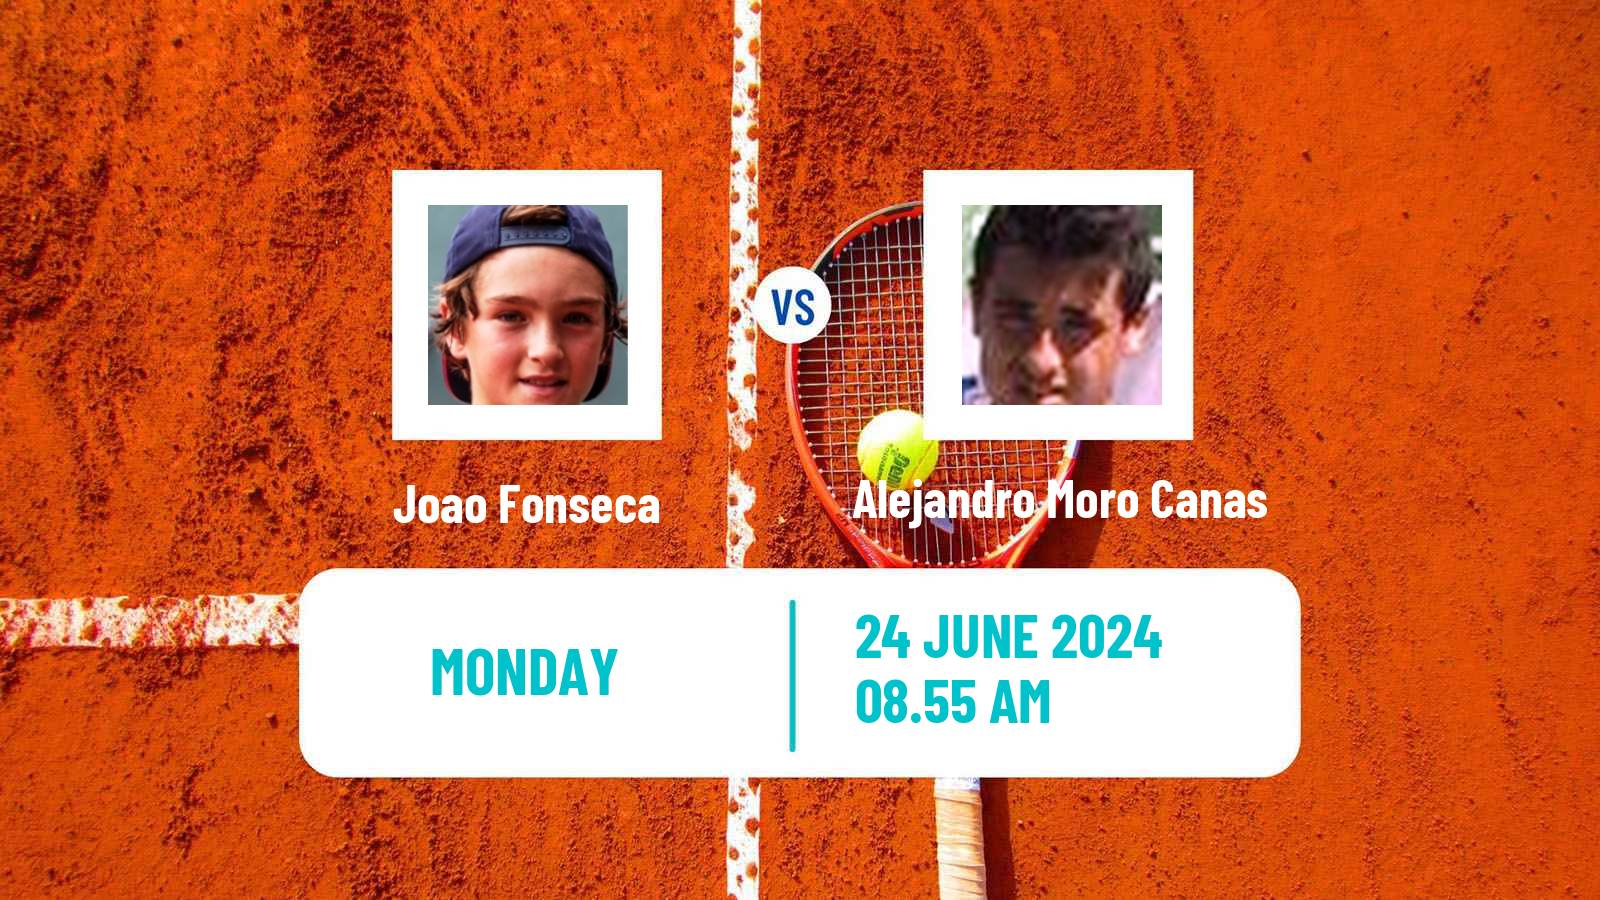 Tennis ATP Wimbledon Joao Fonseca - Alejandro Moro Canas